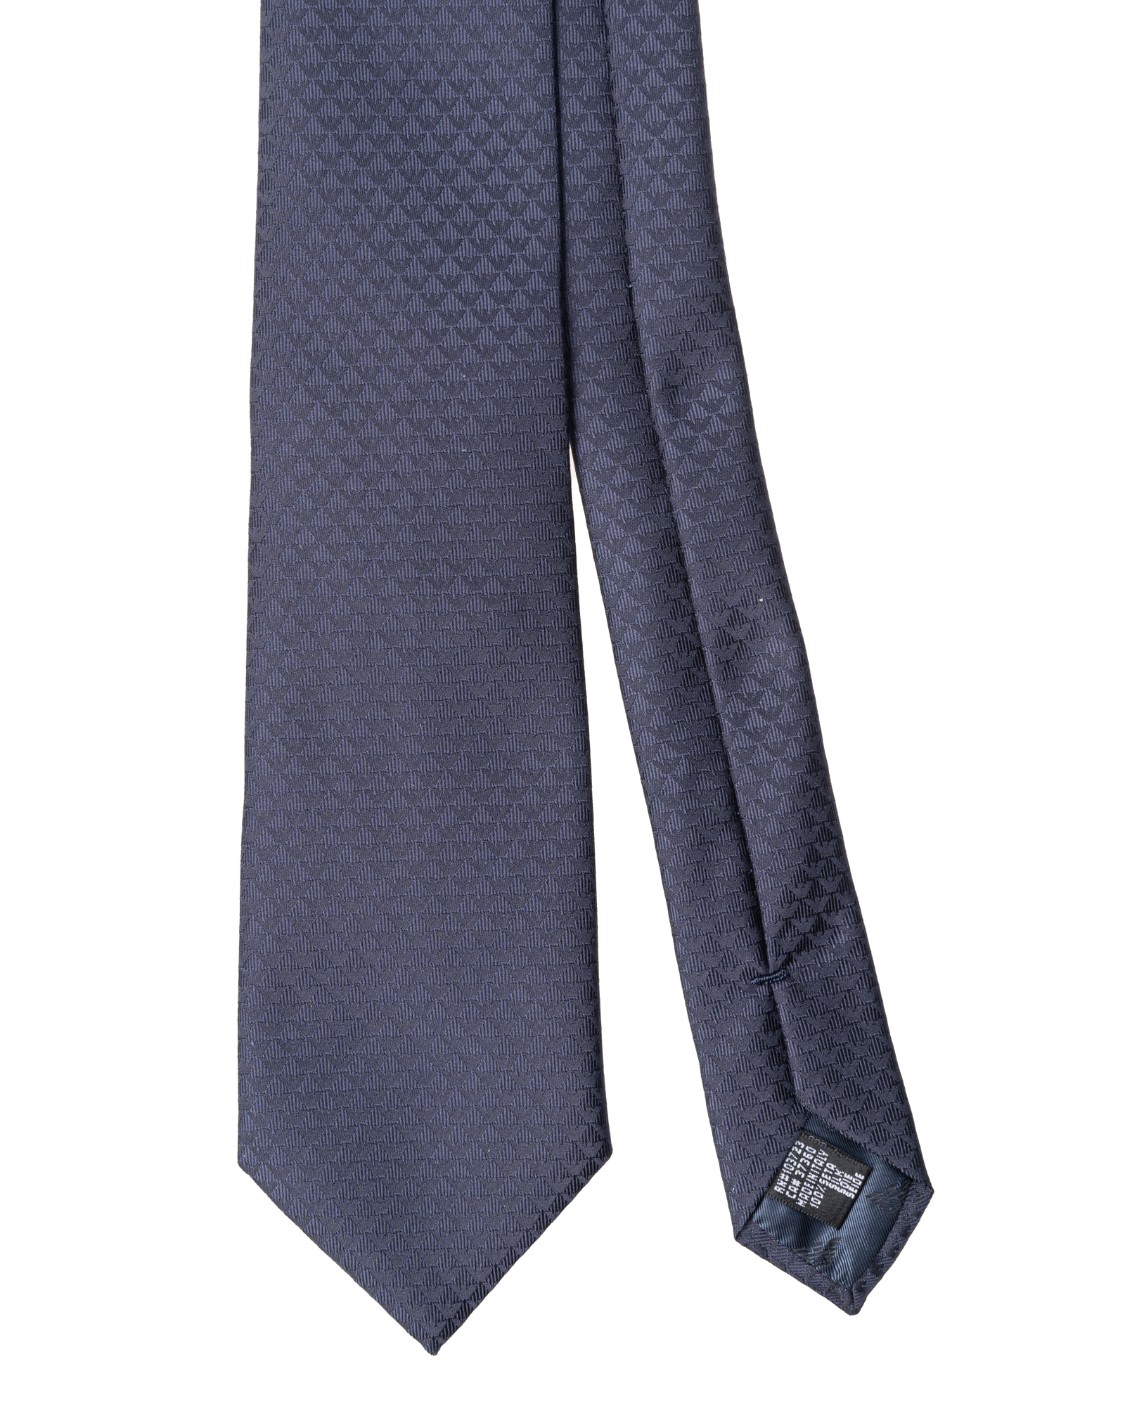 shop EMPORIO ARMANI  Cravatta: Emporio Armani cravatta in seta.
Pura seta con monogram jacquard. 
Composizione: 100% seta.
Fabbricato in Italia.. 340075 CC113-00036 number 4275042